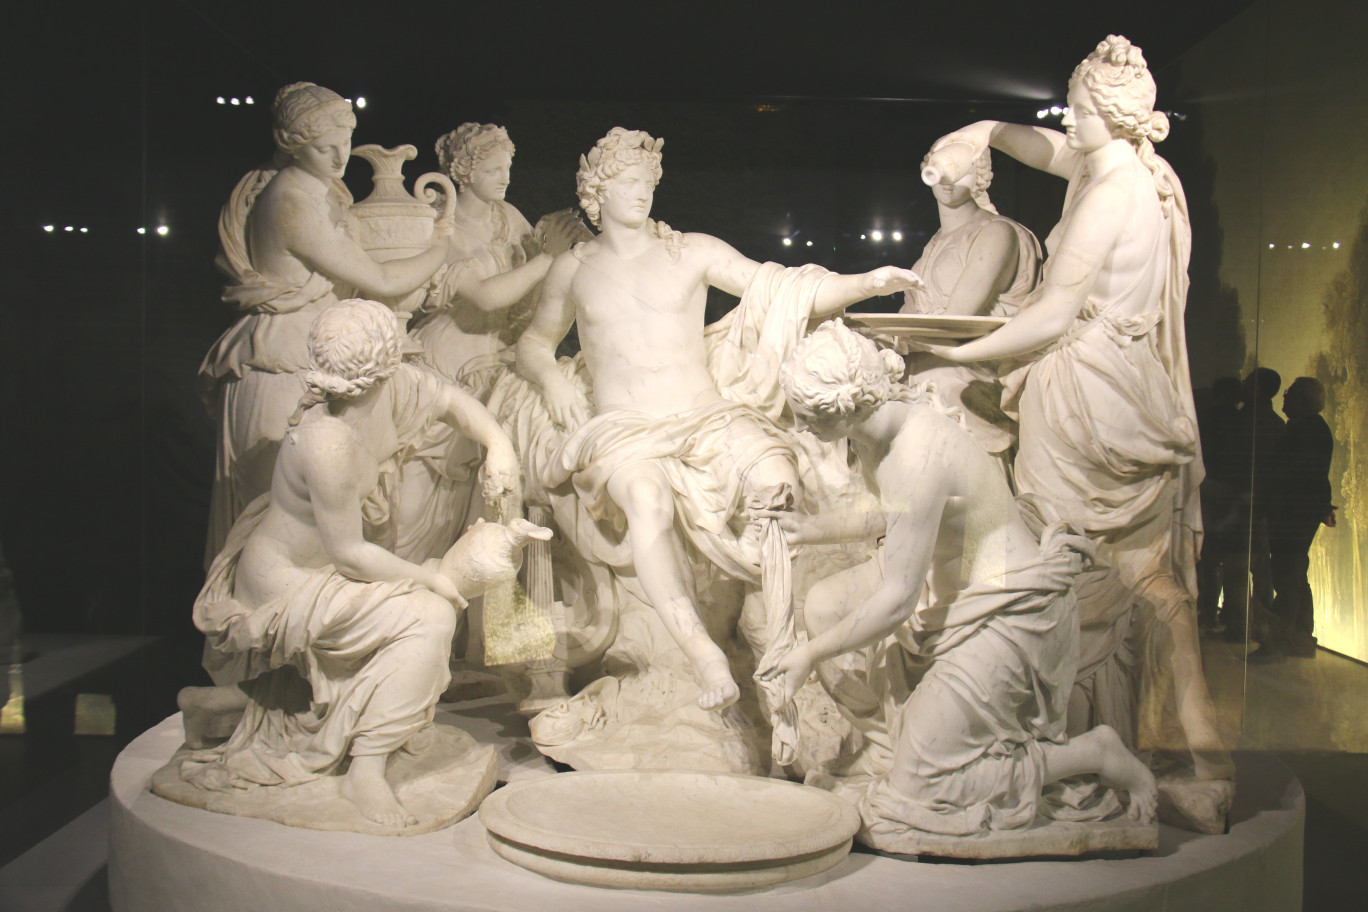 Ce groupe Apollon servi par les nymphes sculpté dans le marbre de Carrare entre 1666 et 1672 par François Girardon et Thomas Regnaudin tient une place importante au sein des collections de Versailles. Il s’agit de la première œuvre en marbre commandée pour orner les jardins du château. Par ailleurs, c’est l’un des plus grands chefs d’œuvre de la sculpture française, il est à Versailles ce que la Joconde est au Louvre.